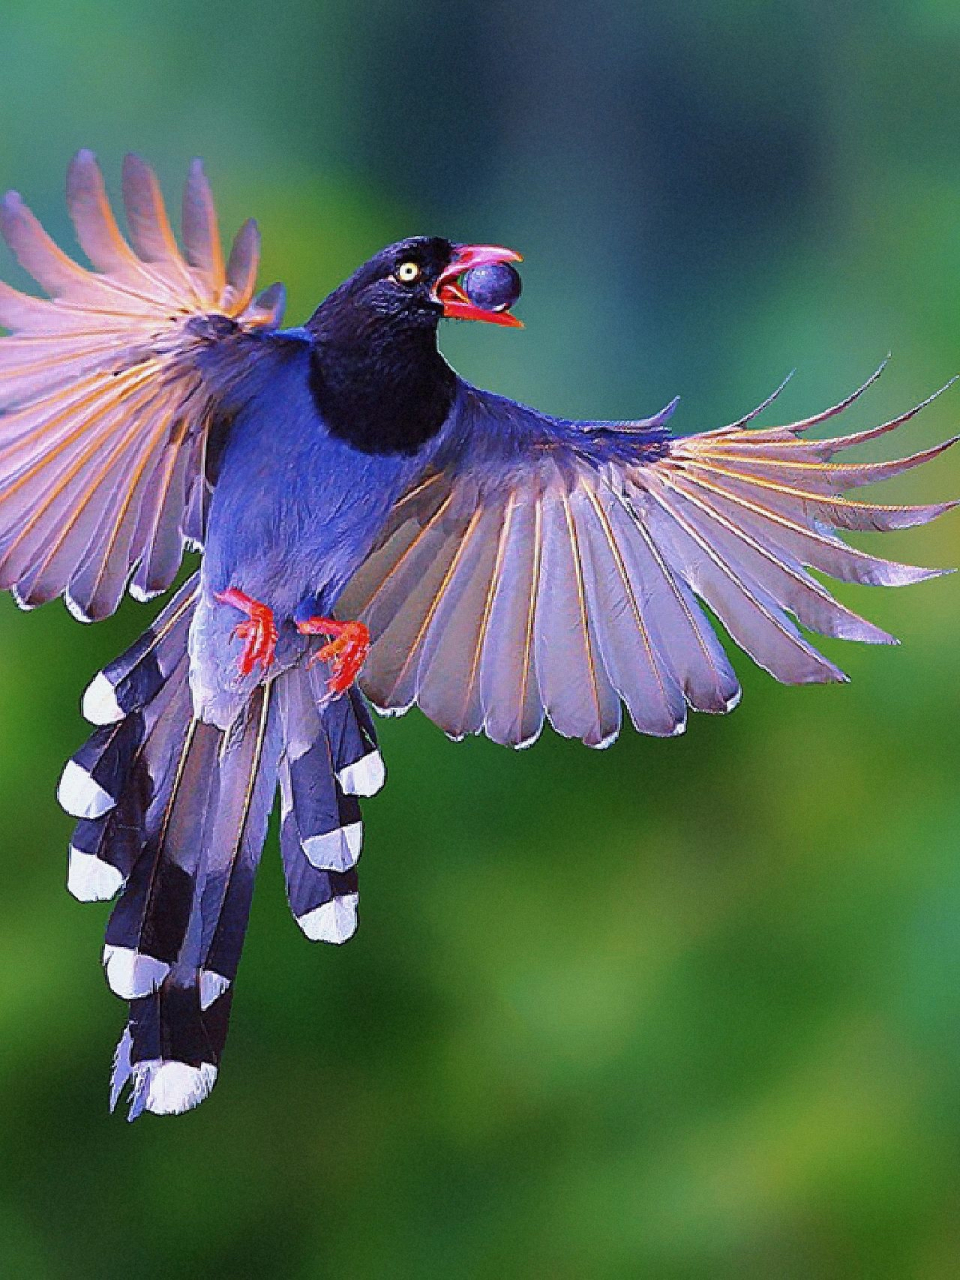 台湾蓝鹊为中国鸟类特有种,仅分布于台湾岛的中低海拔森林中,台湾蓝鹊